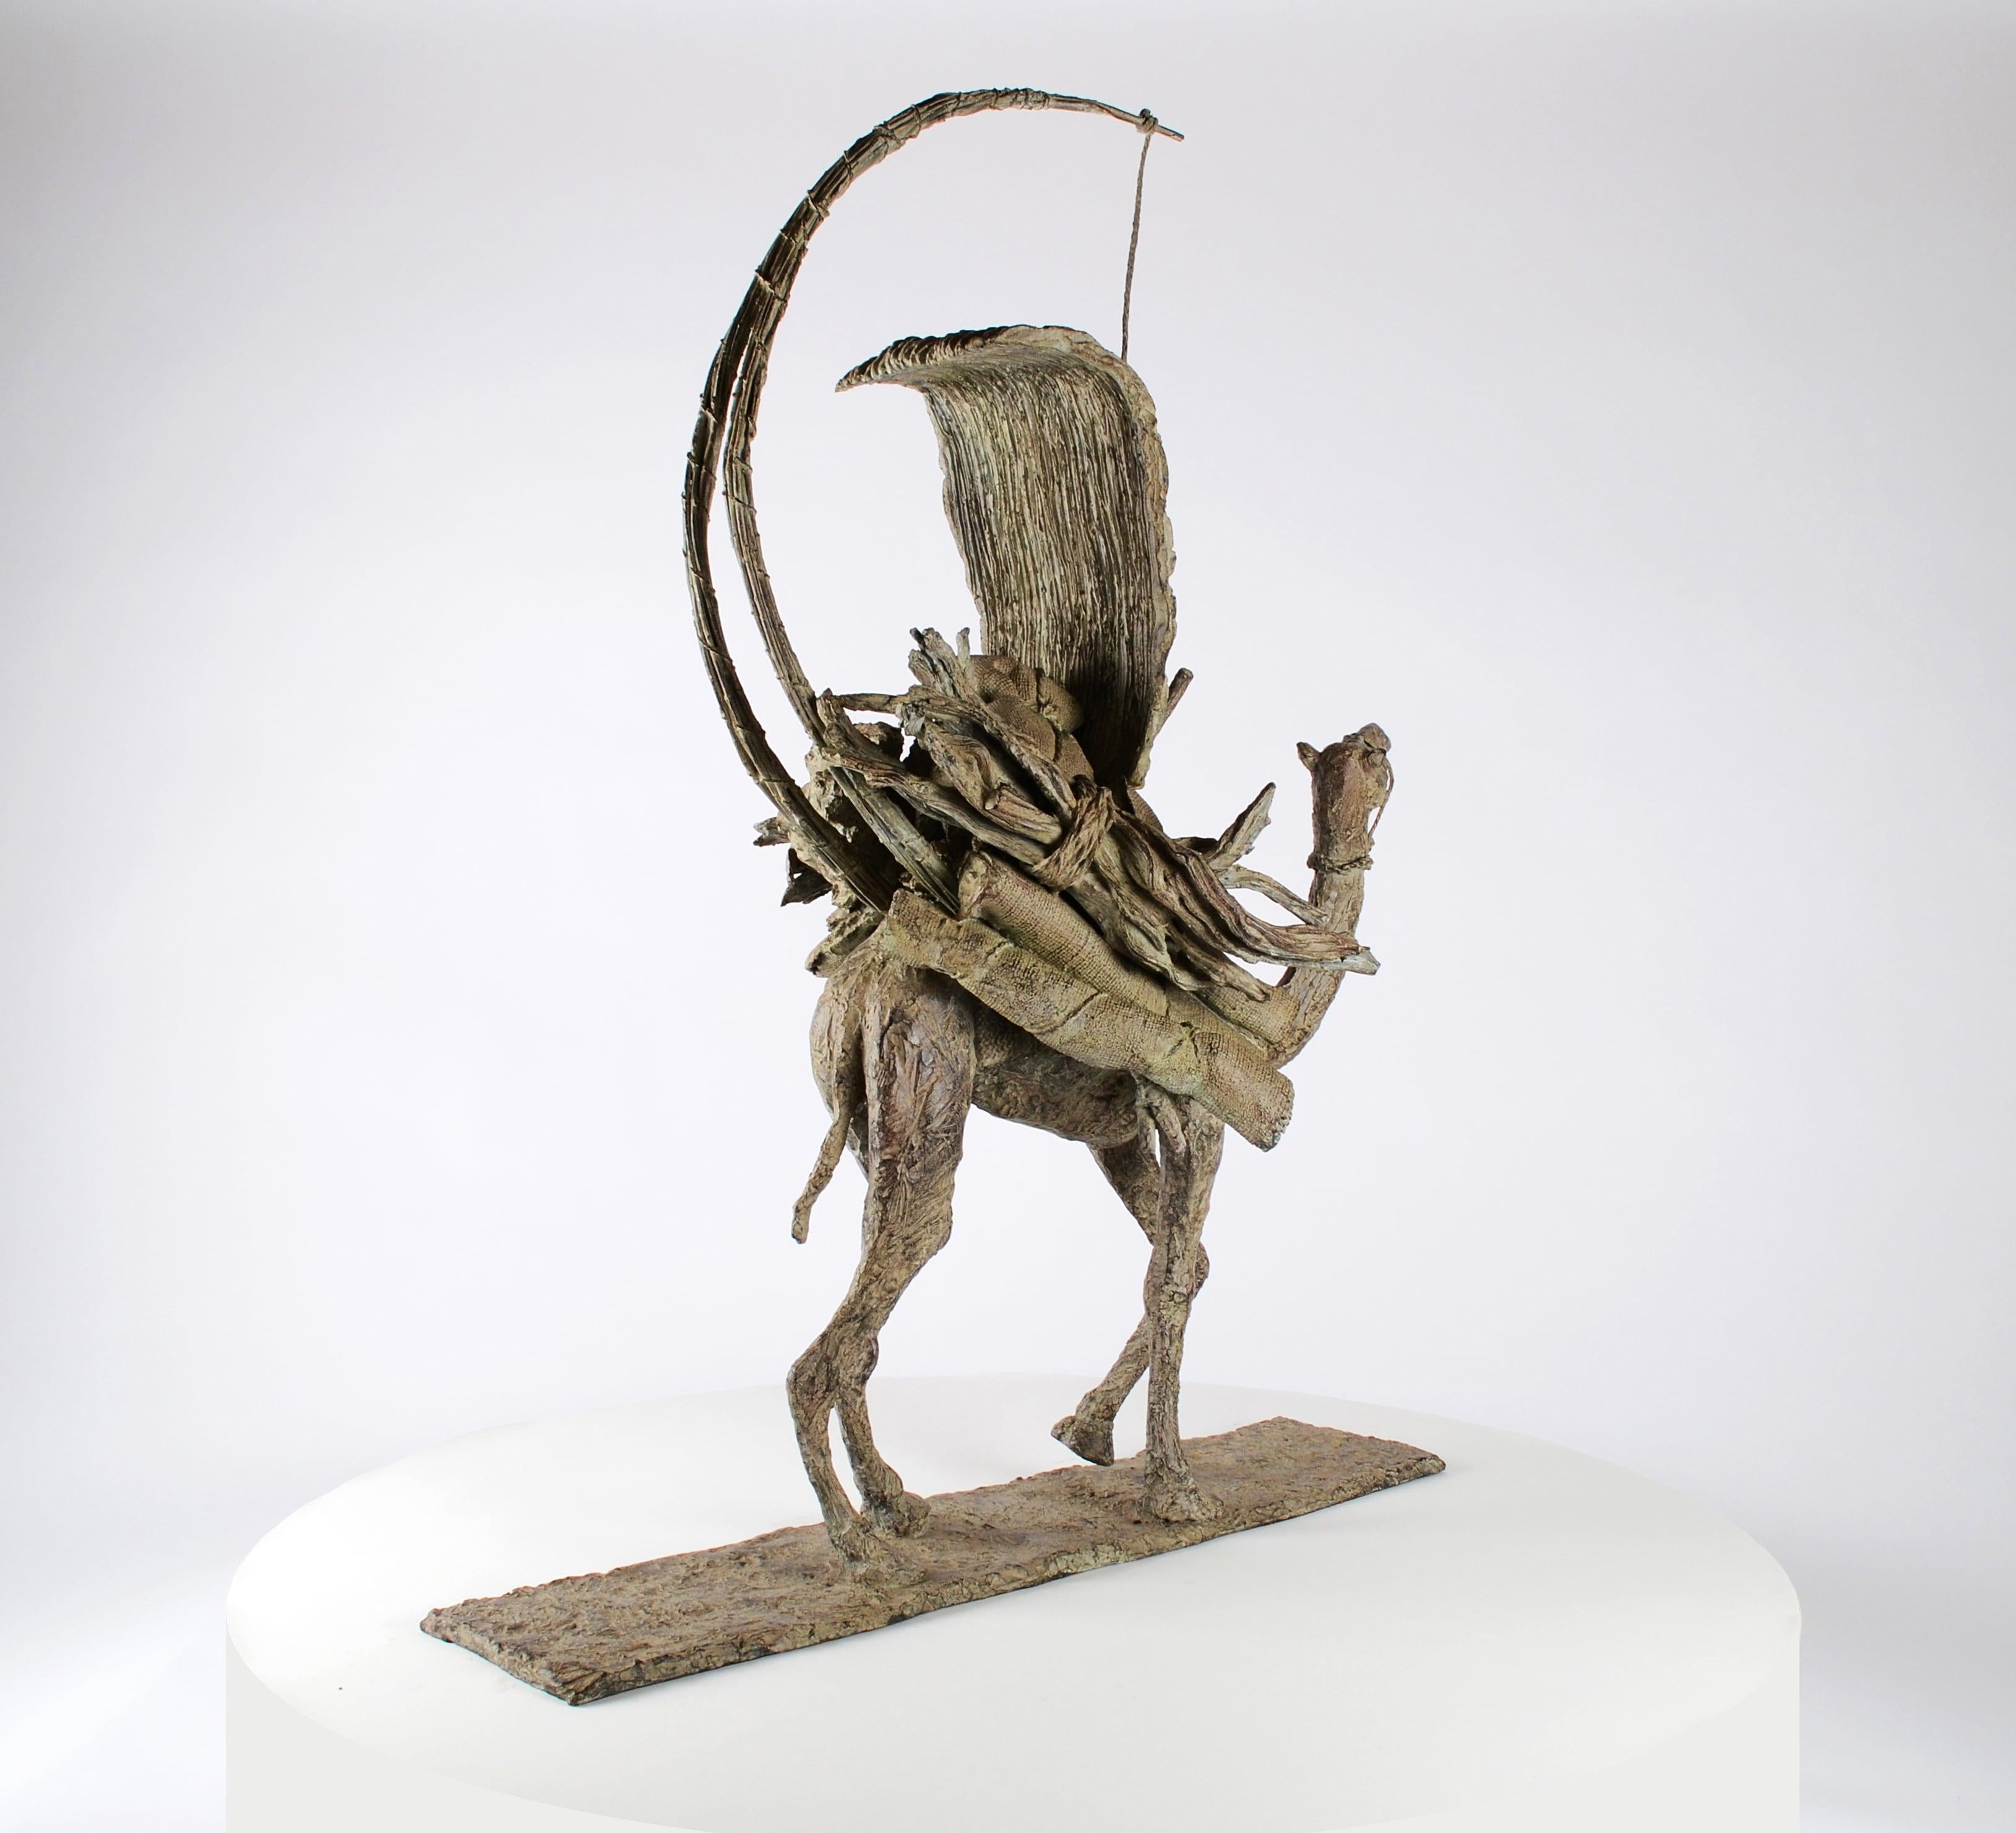 Le vaisseau du désert, sculpture en bronze de l'artiste contemporaine française Marine de Soos. 
Dimensions : 103 cm × 75 cm × 17 cm. Edition de 8 + 4 A.P. Chaque exemplaire est signé et numéroté.
